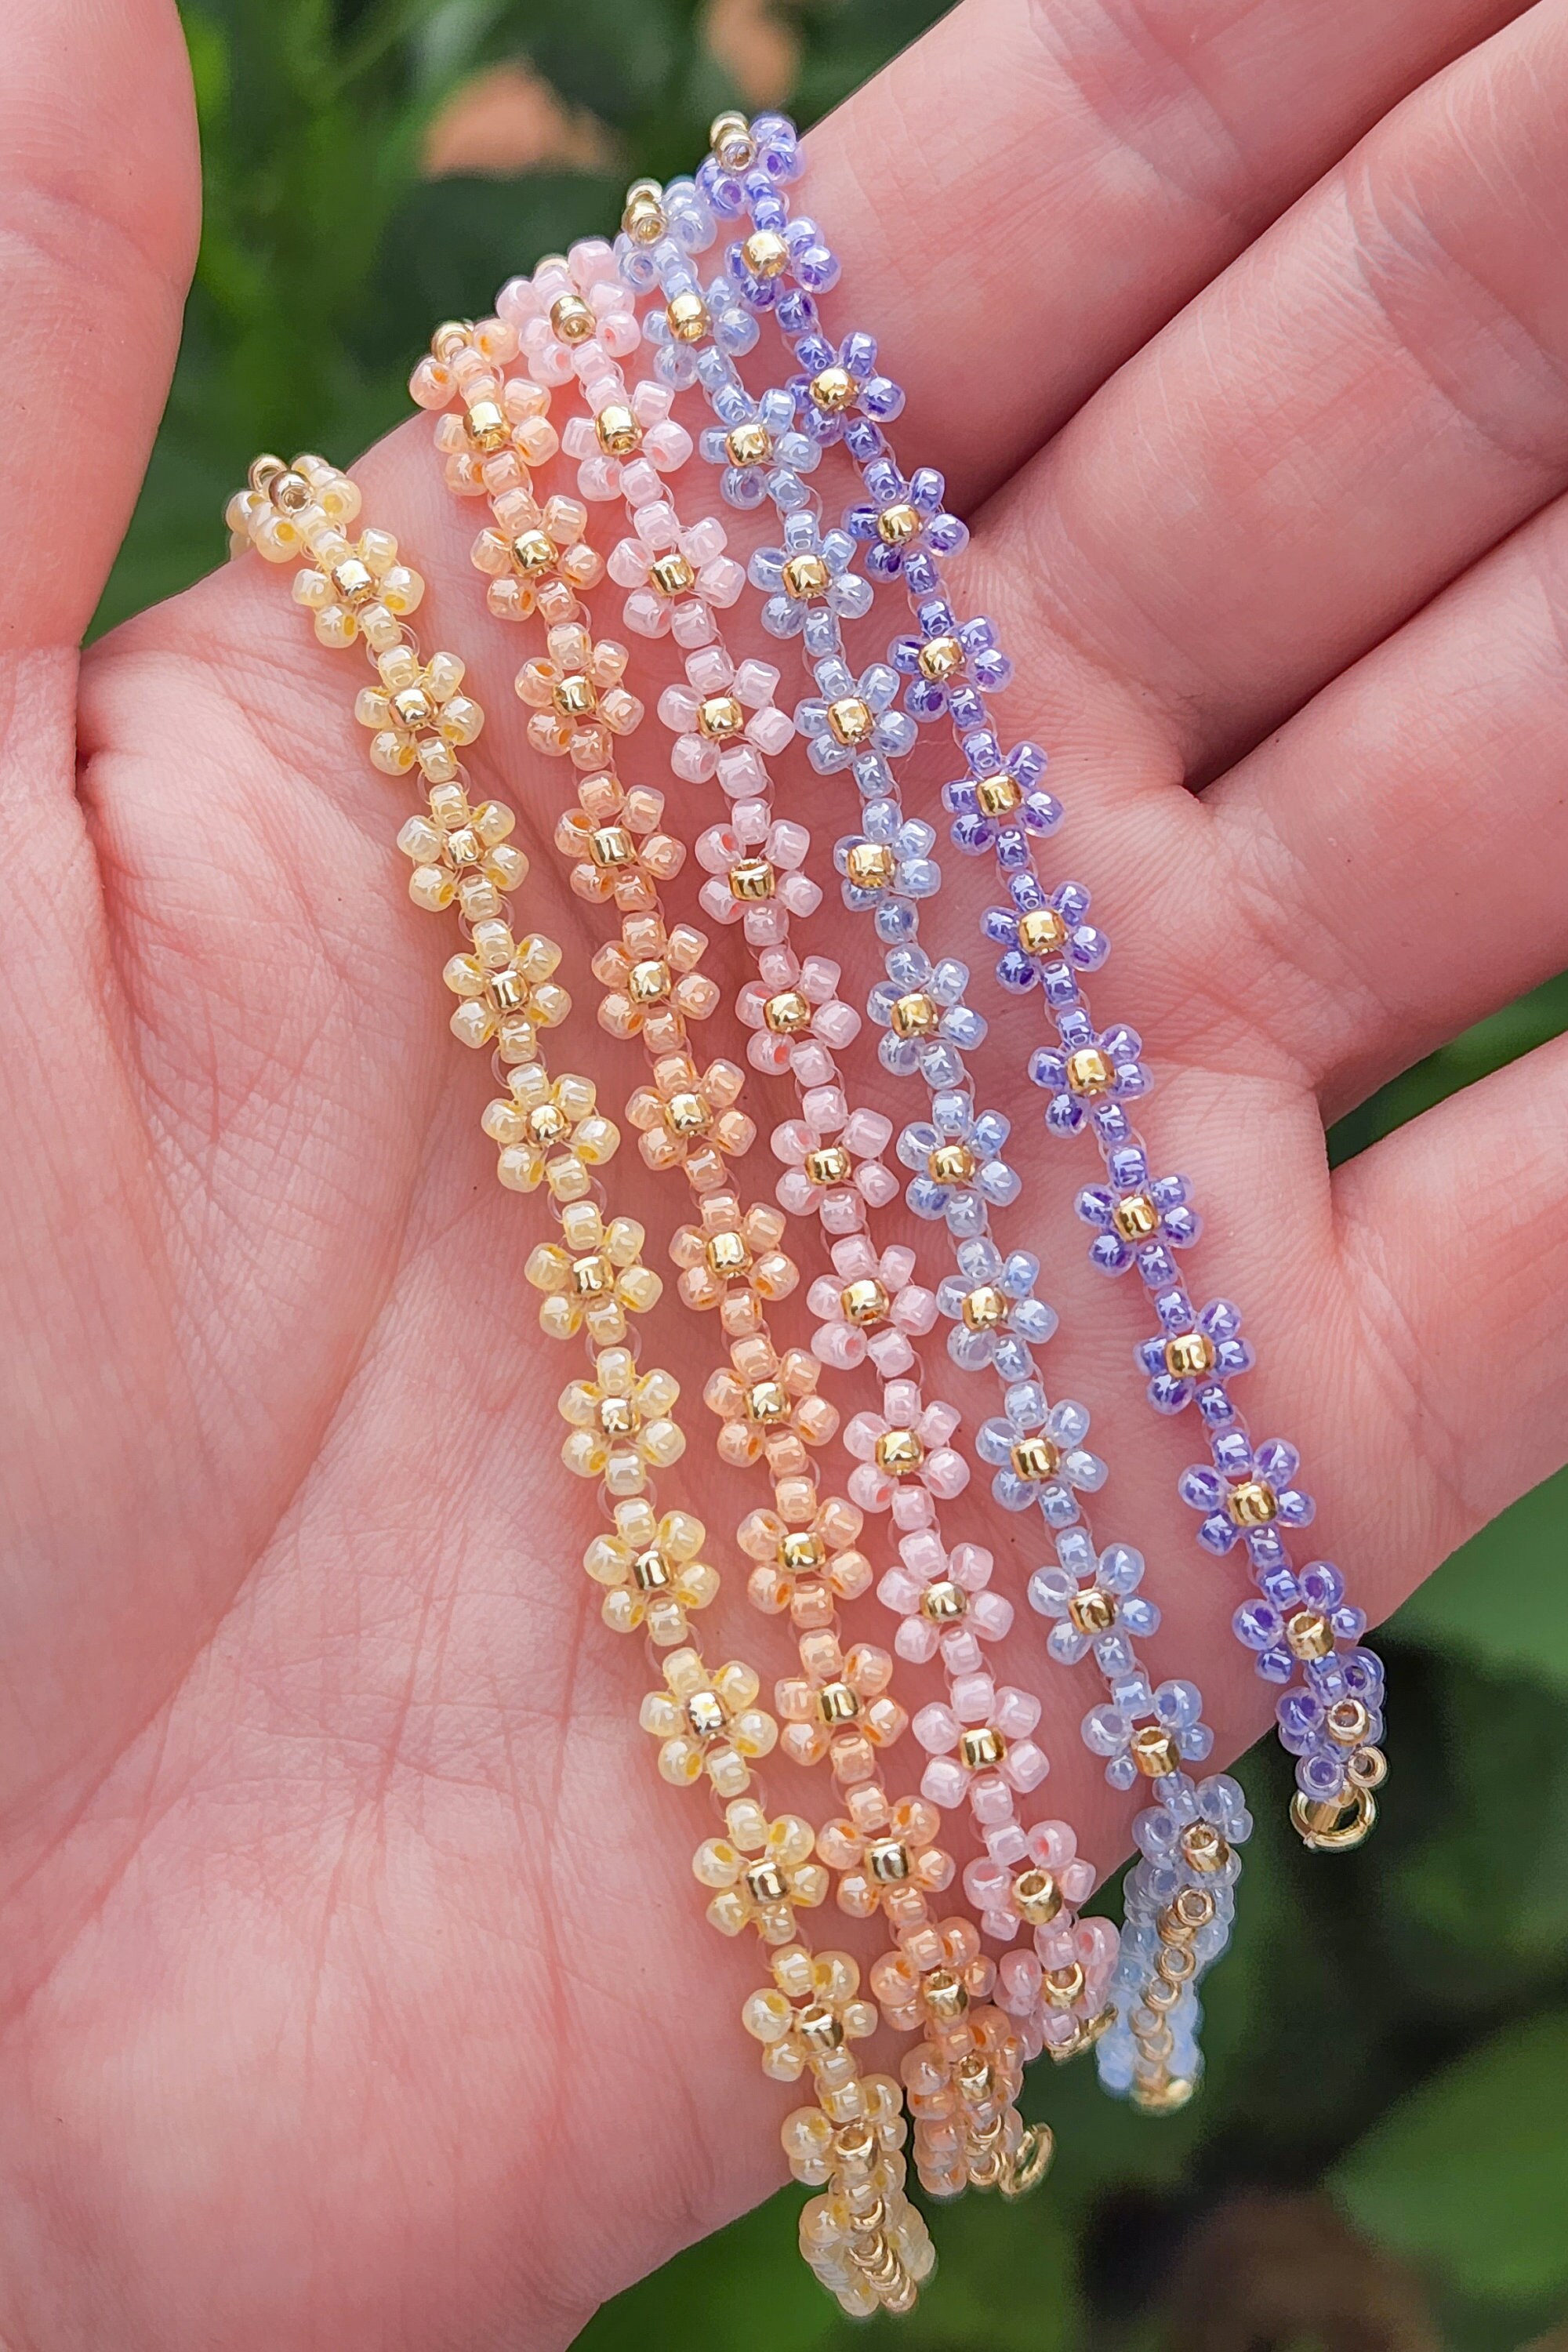 Seed Bead Bracelet, Dainty Beaded Bracelets, Layering Bracelet, Tiny Bead  Bracelet, Gifts for Women, Colorful Minimalist Everyday Bracelet 